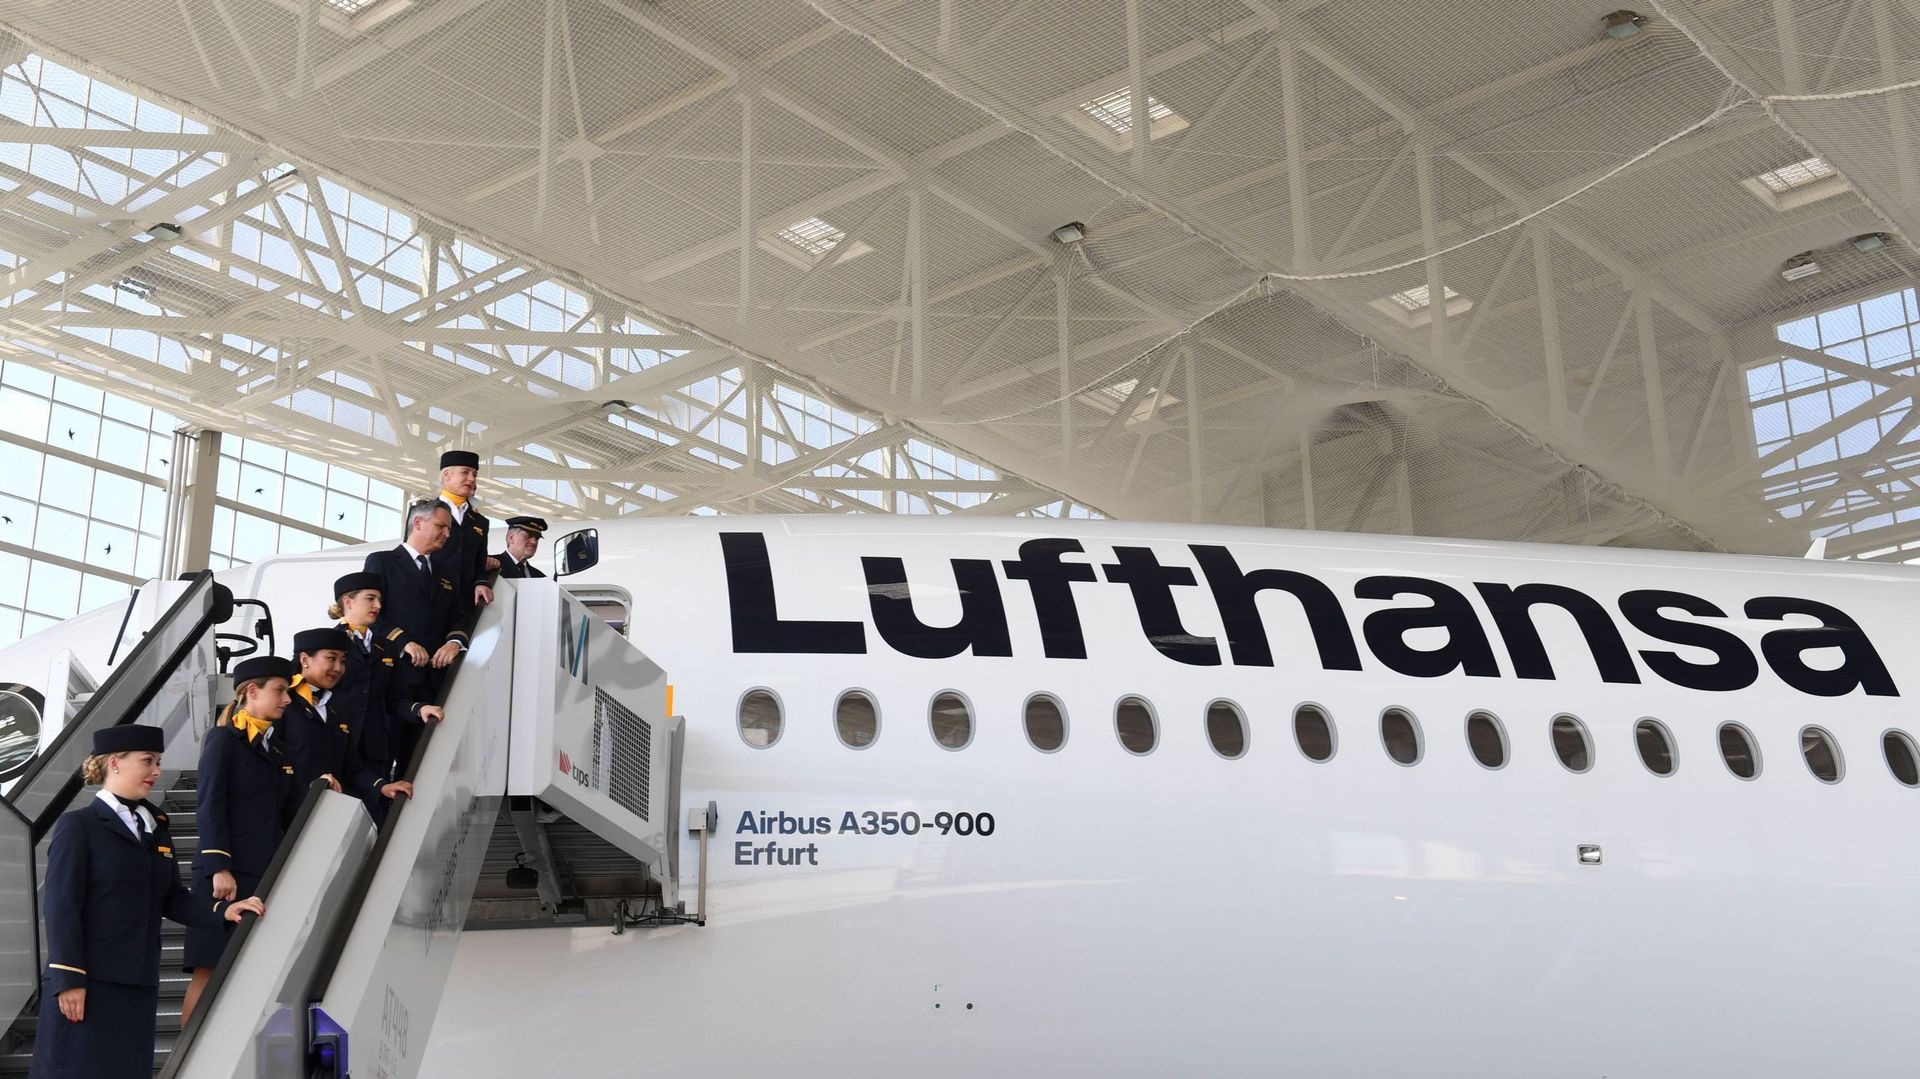 La plupart des postes vacants concernent les compagnies Lufthansa, Lufthansa Technik et Swiss